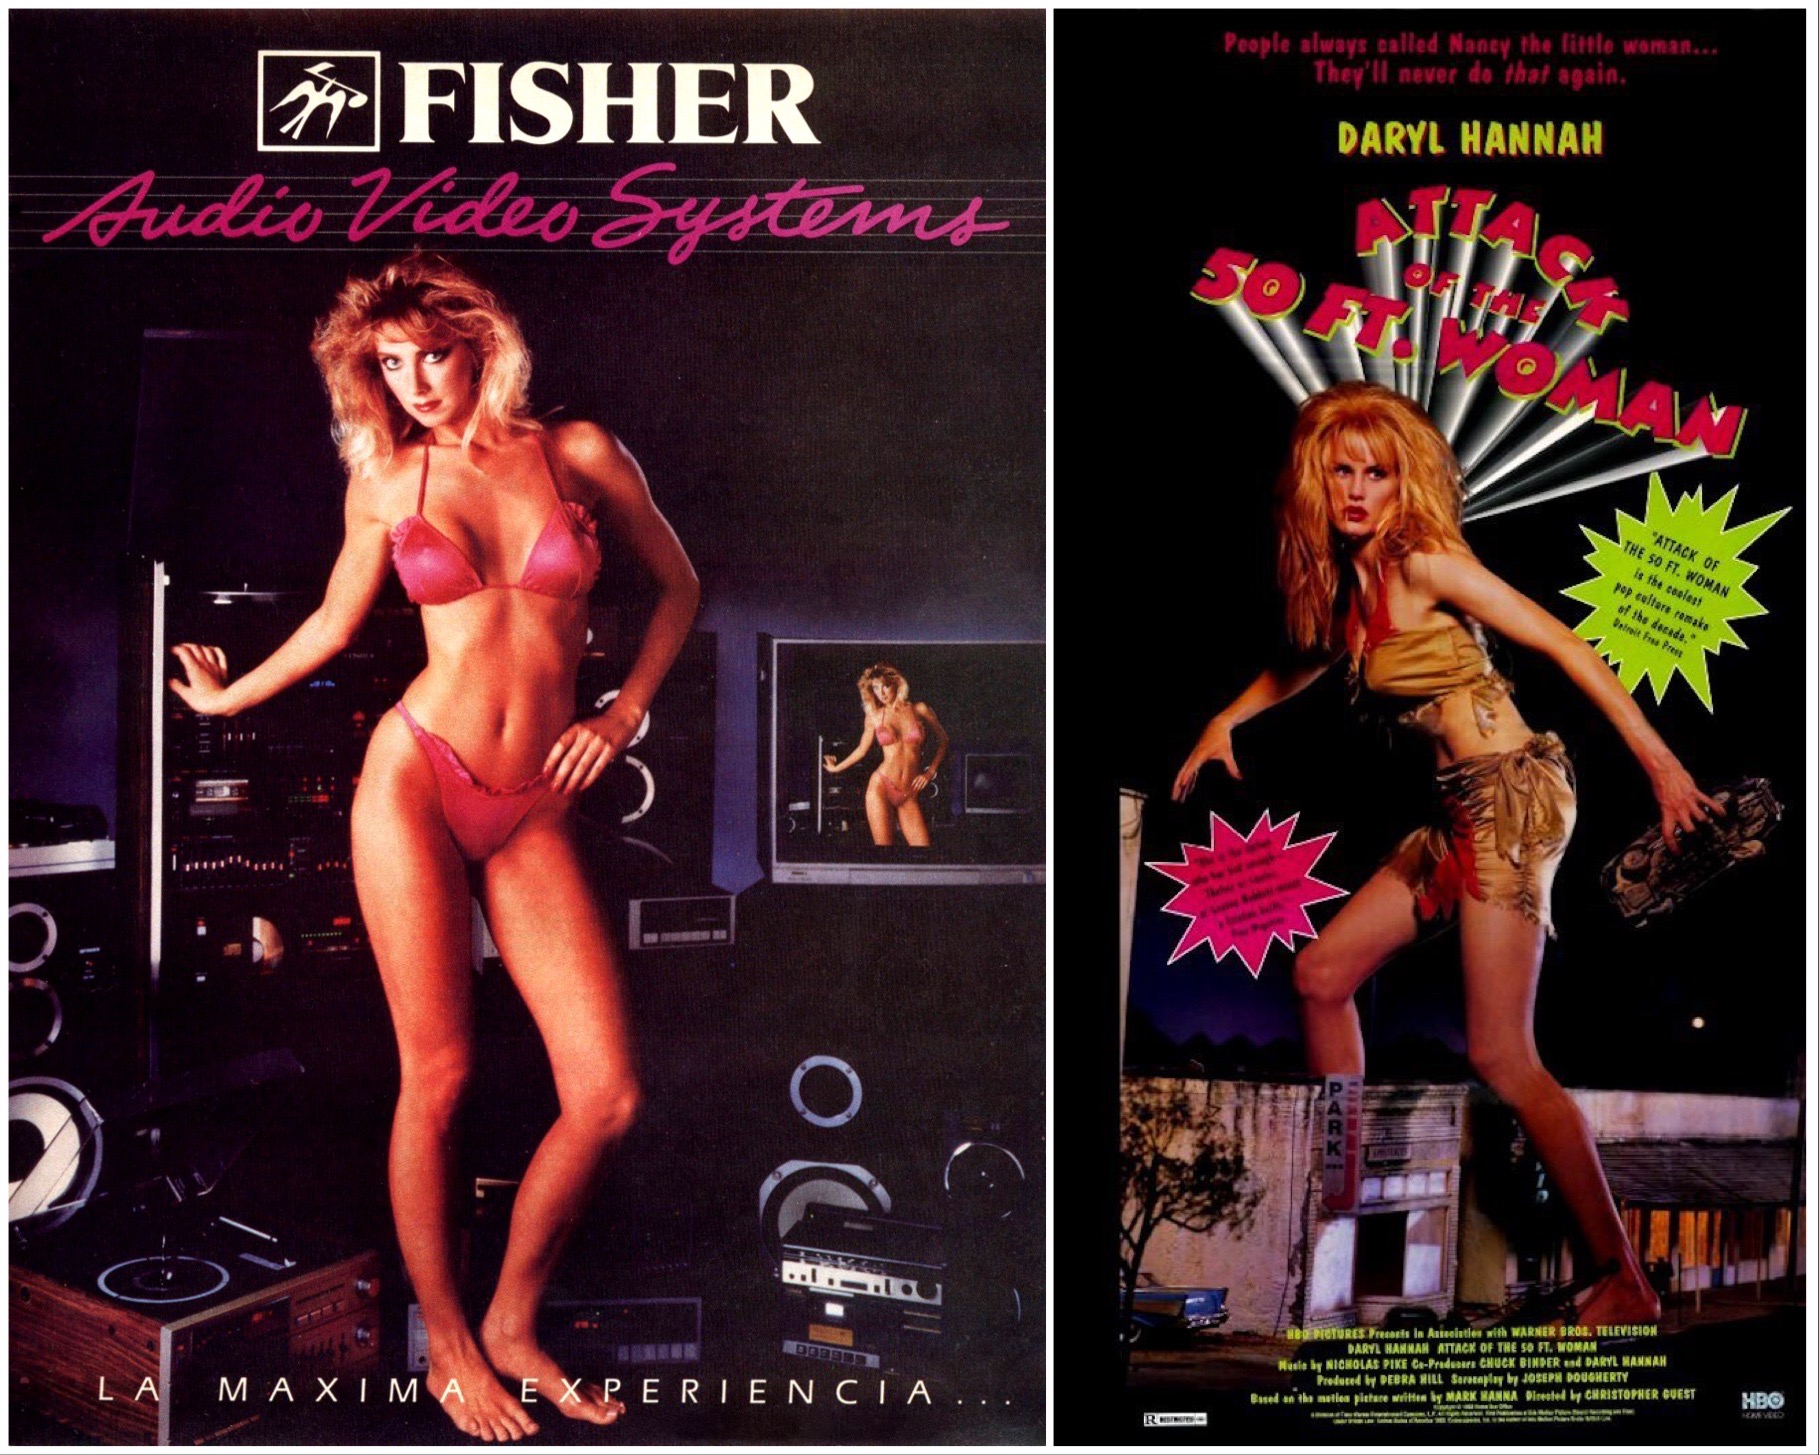 Inkább véletlen egybeesés, mint direkt inspiráció lehetett, de a Fisher hifireklámja erős hasonlóságokat mutat egy Daryl Hannah-filmmel. A (hifi)tornyok között pózoló, hosszú combú szőke amazonban nem nehéz meglátni Az 50 láb magas nő támadásának plakátját.